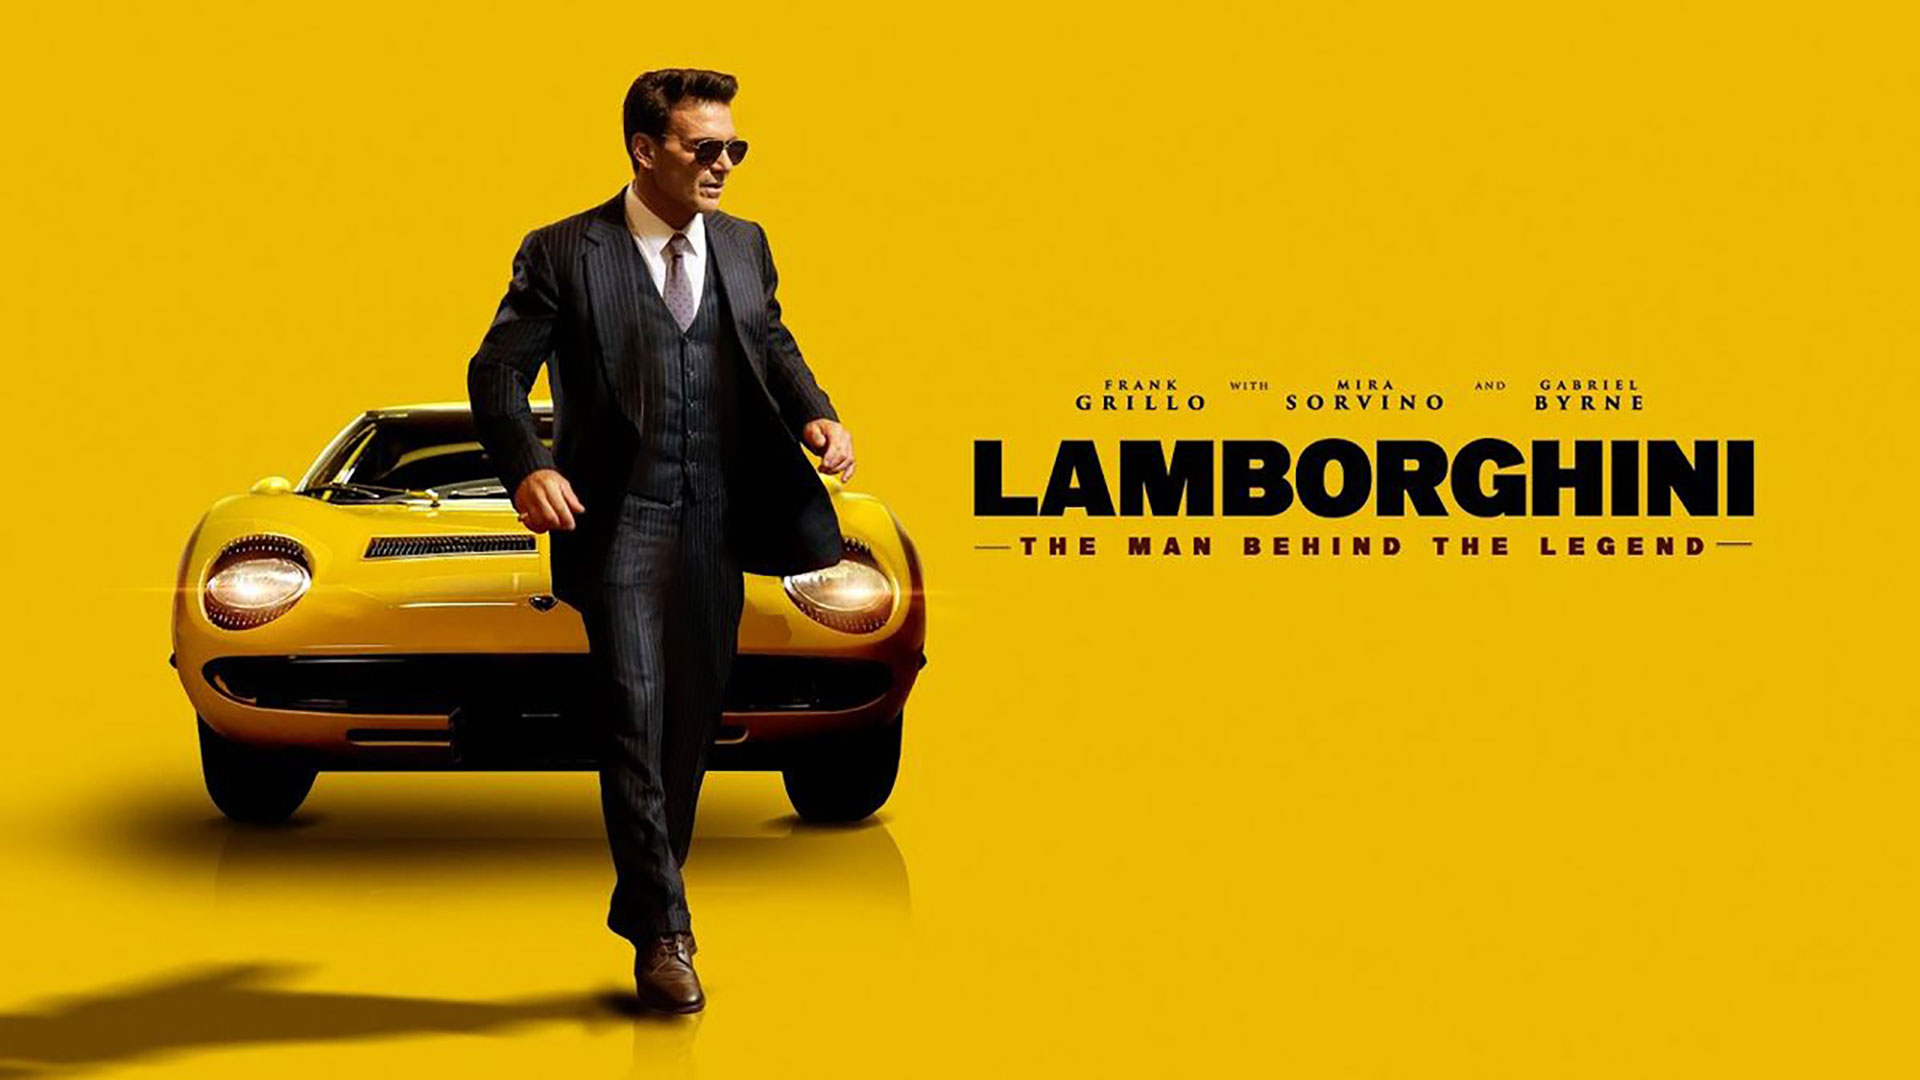 La vida de Ferruccio Lamborghini llegará al cine hacia fin de año. El film cuenta cómo nació su rivalidad con Enzo Ferrari